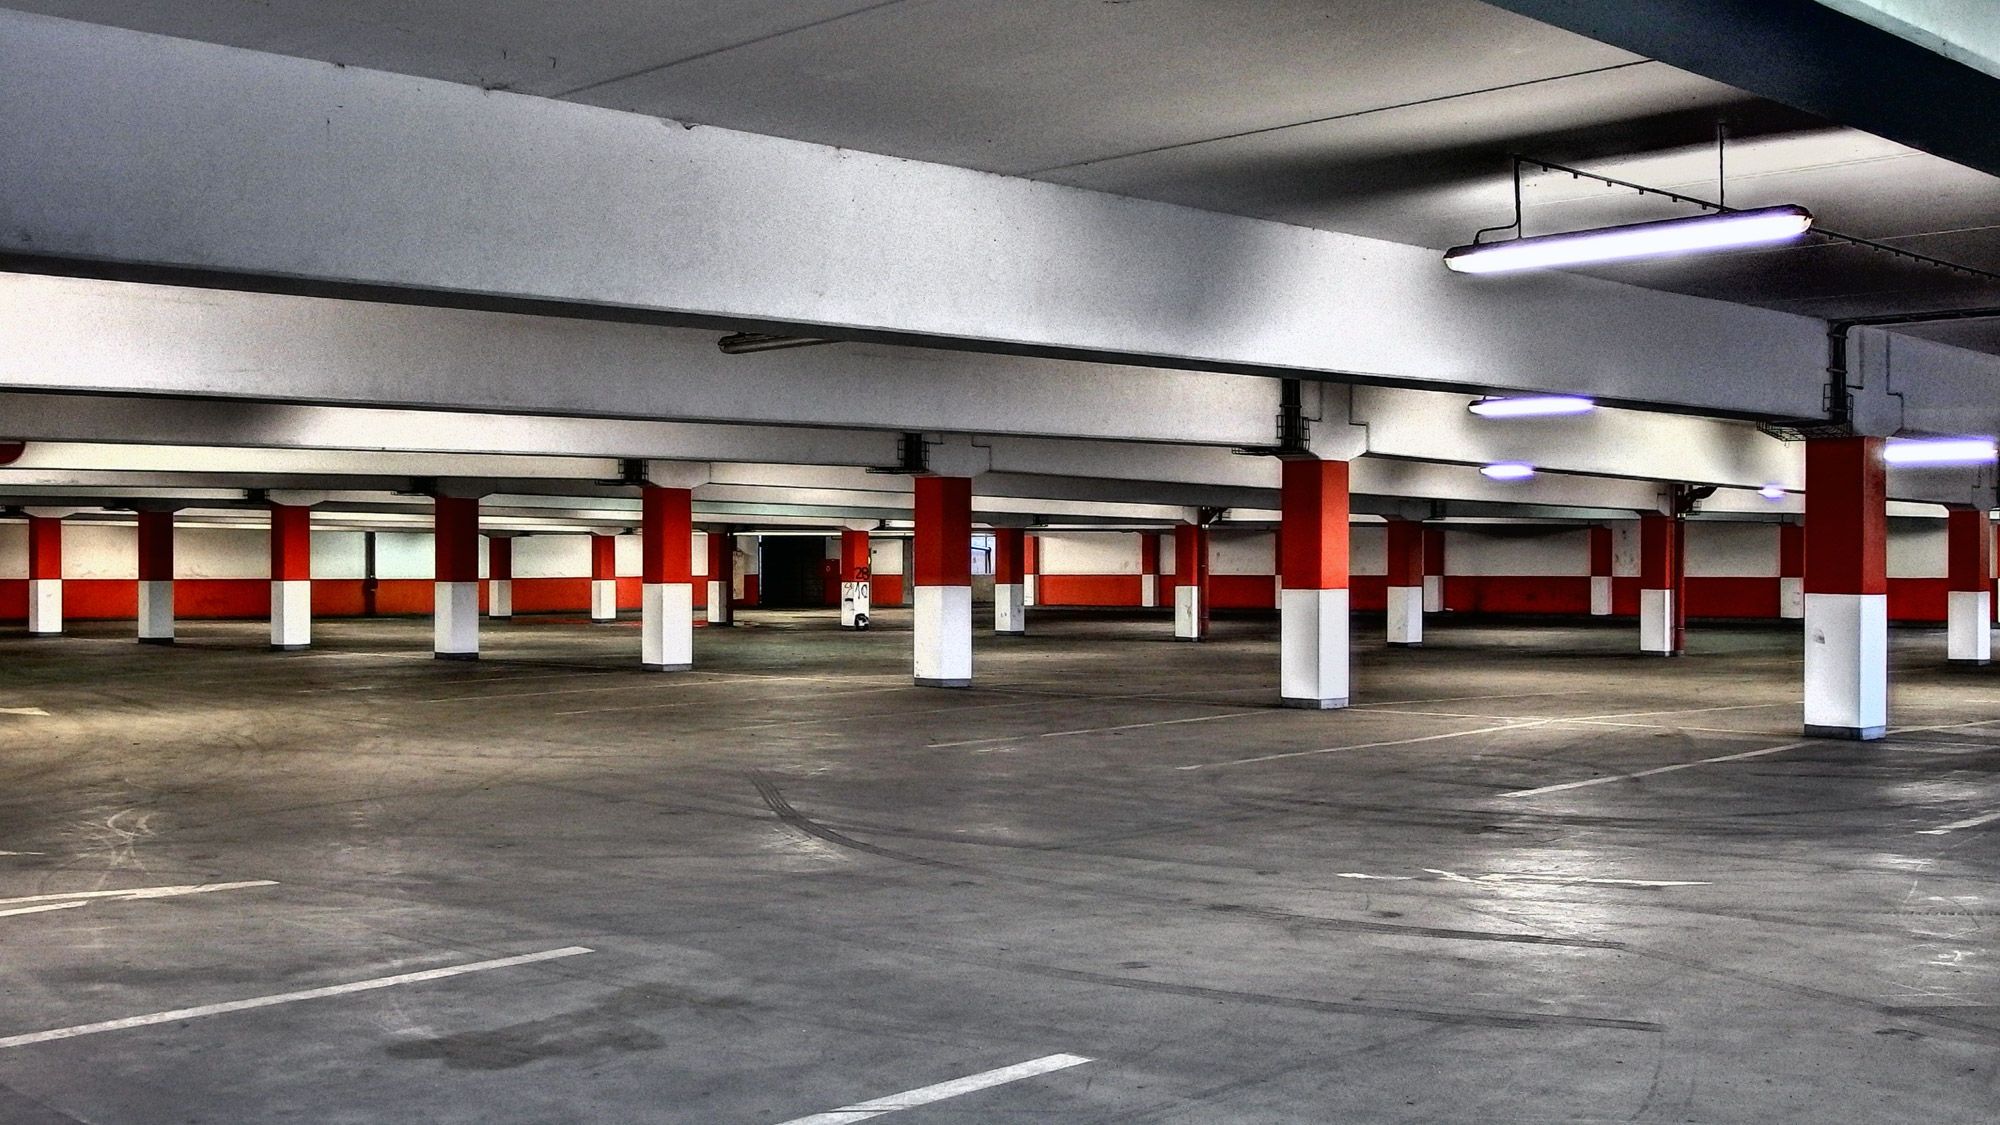 Partiu Garage ?#roqueira #underground #garage #vilamimosarj